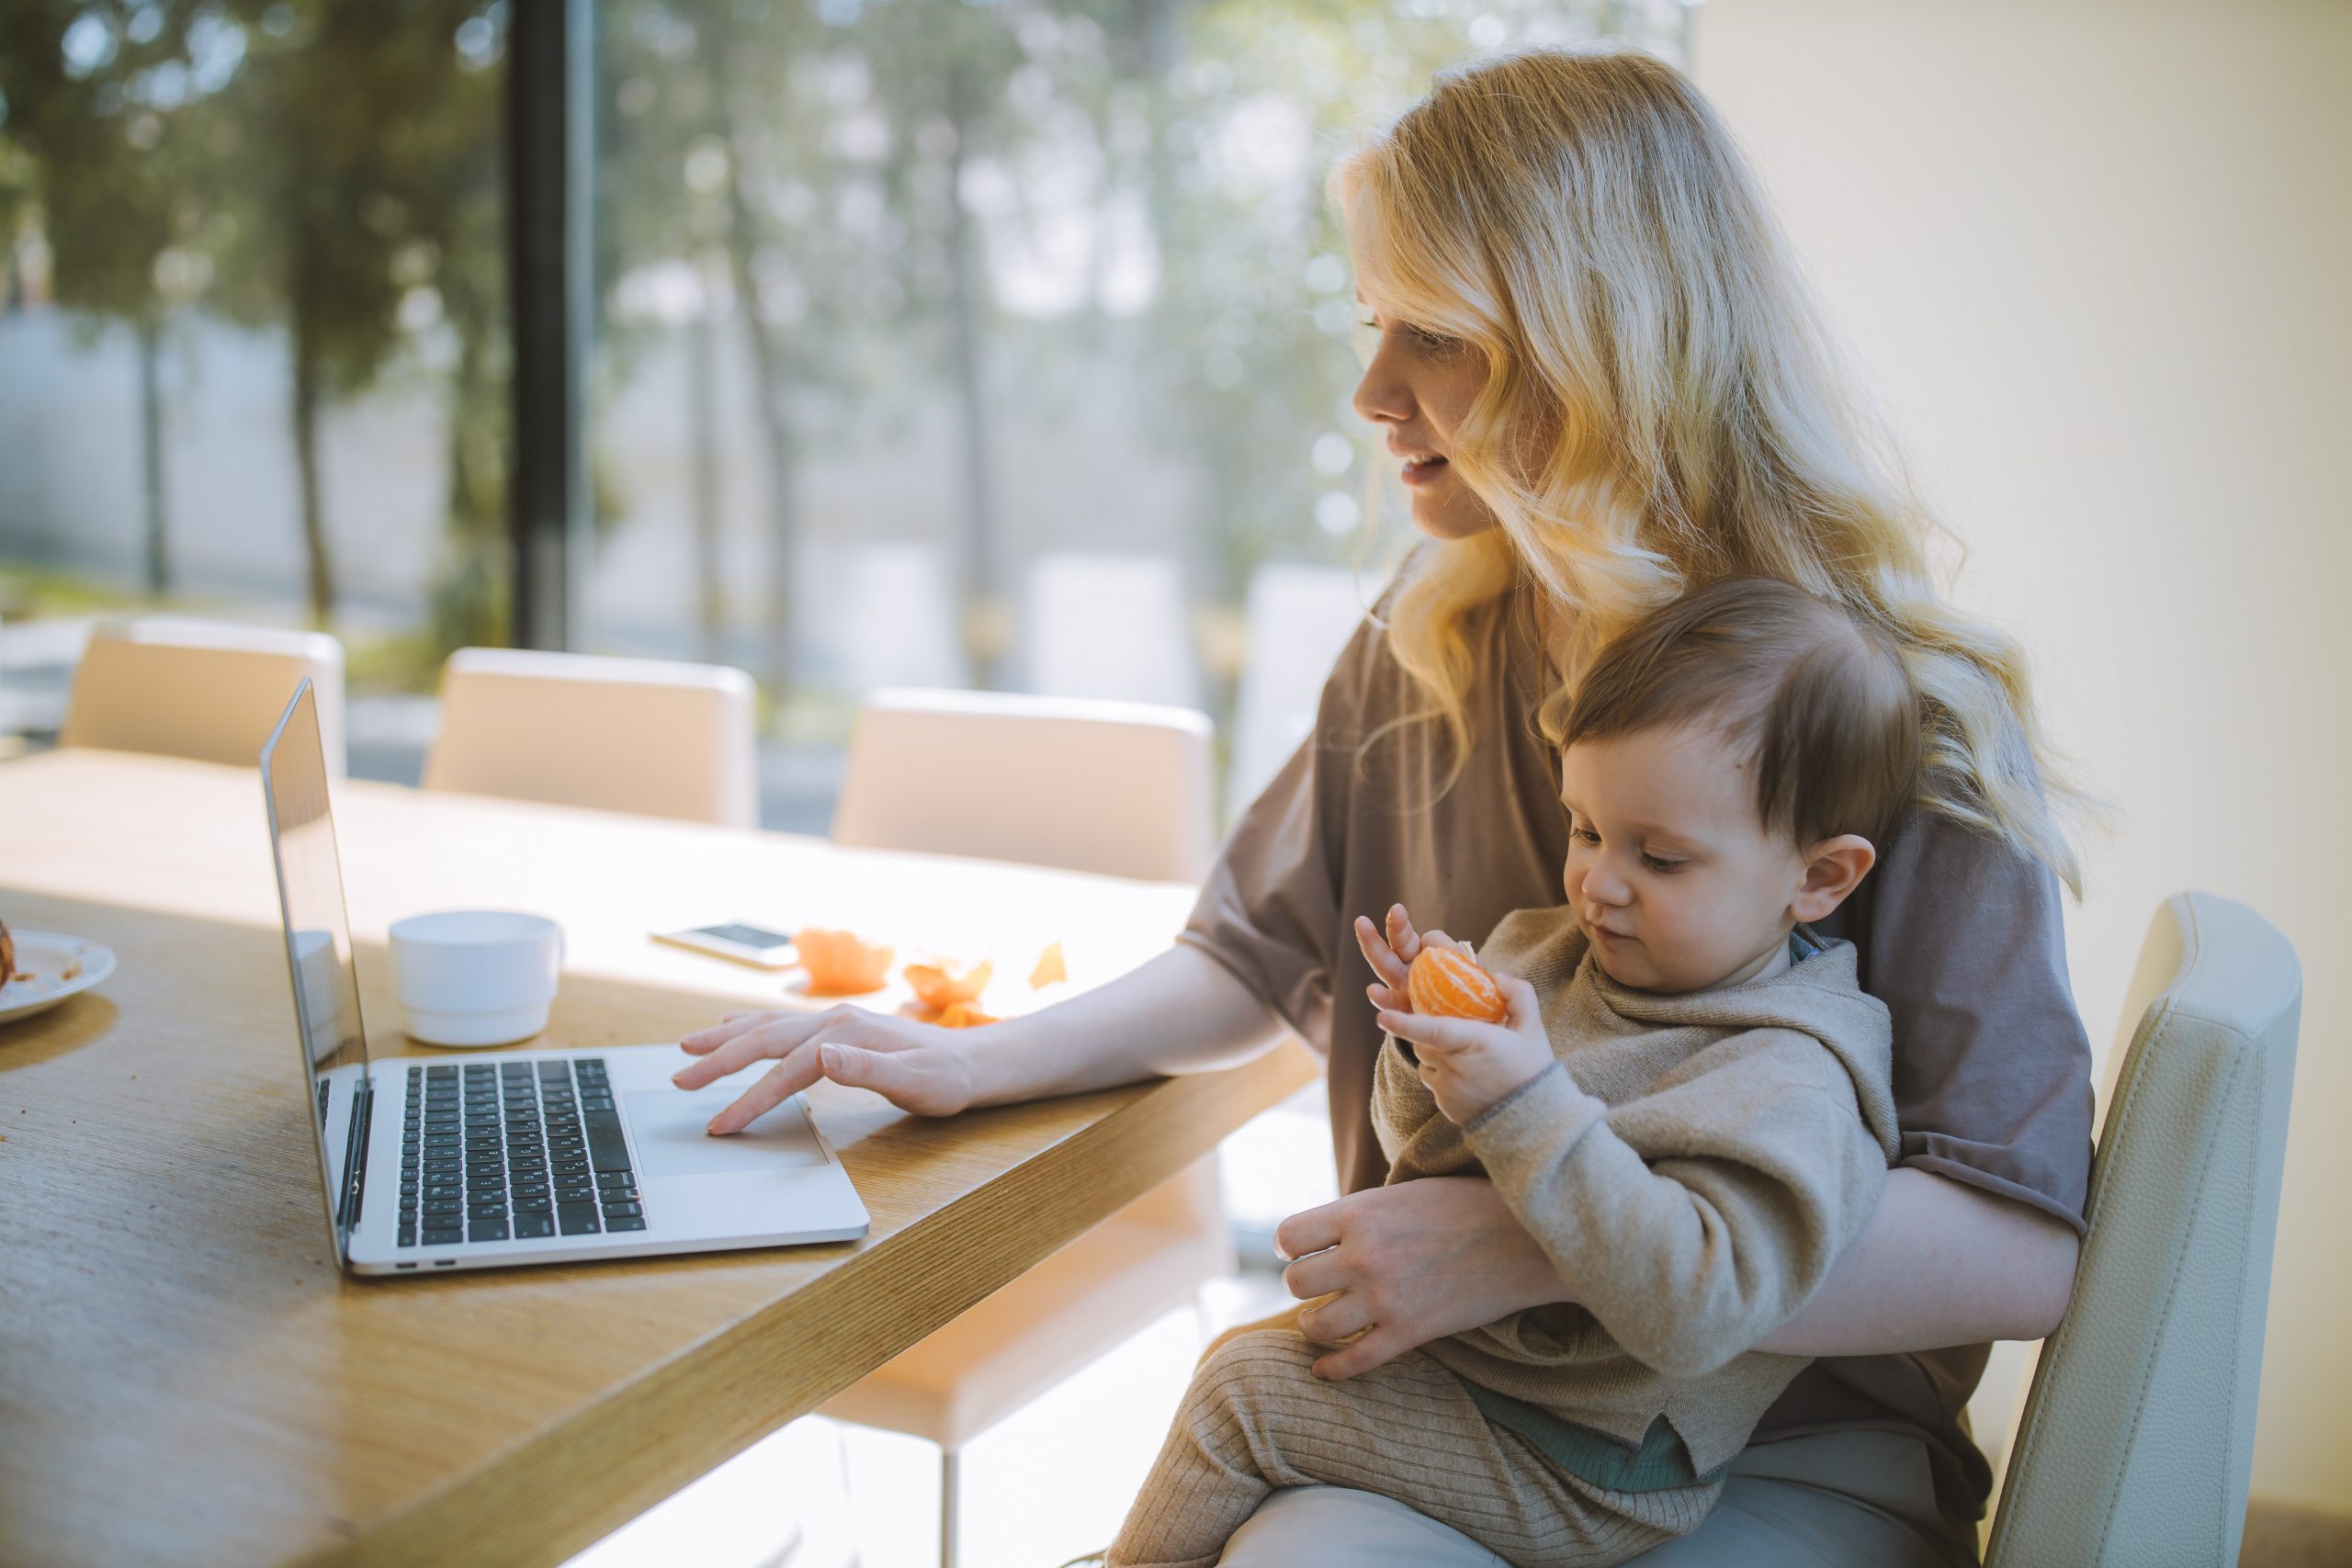 Esistono soluzioni flessibili che consentano alle mamme di trovare un equilibrio tra la famiglia e la carriera? Benvenute nel mondo del lavoro online per mamme.